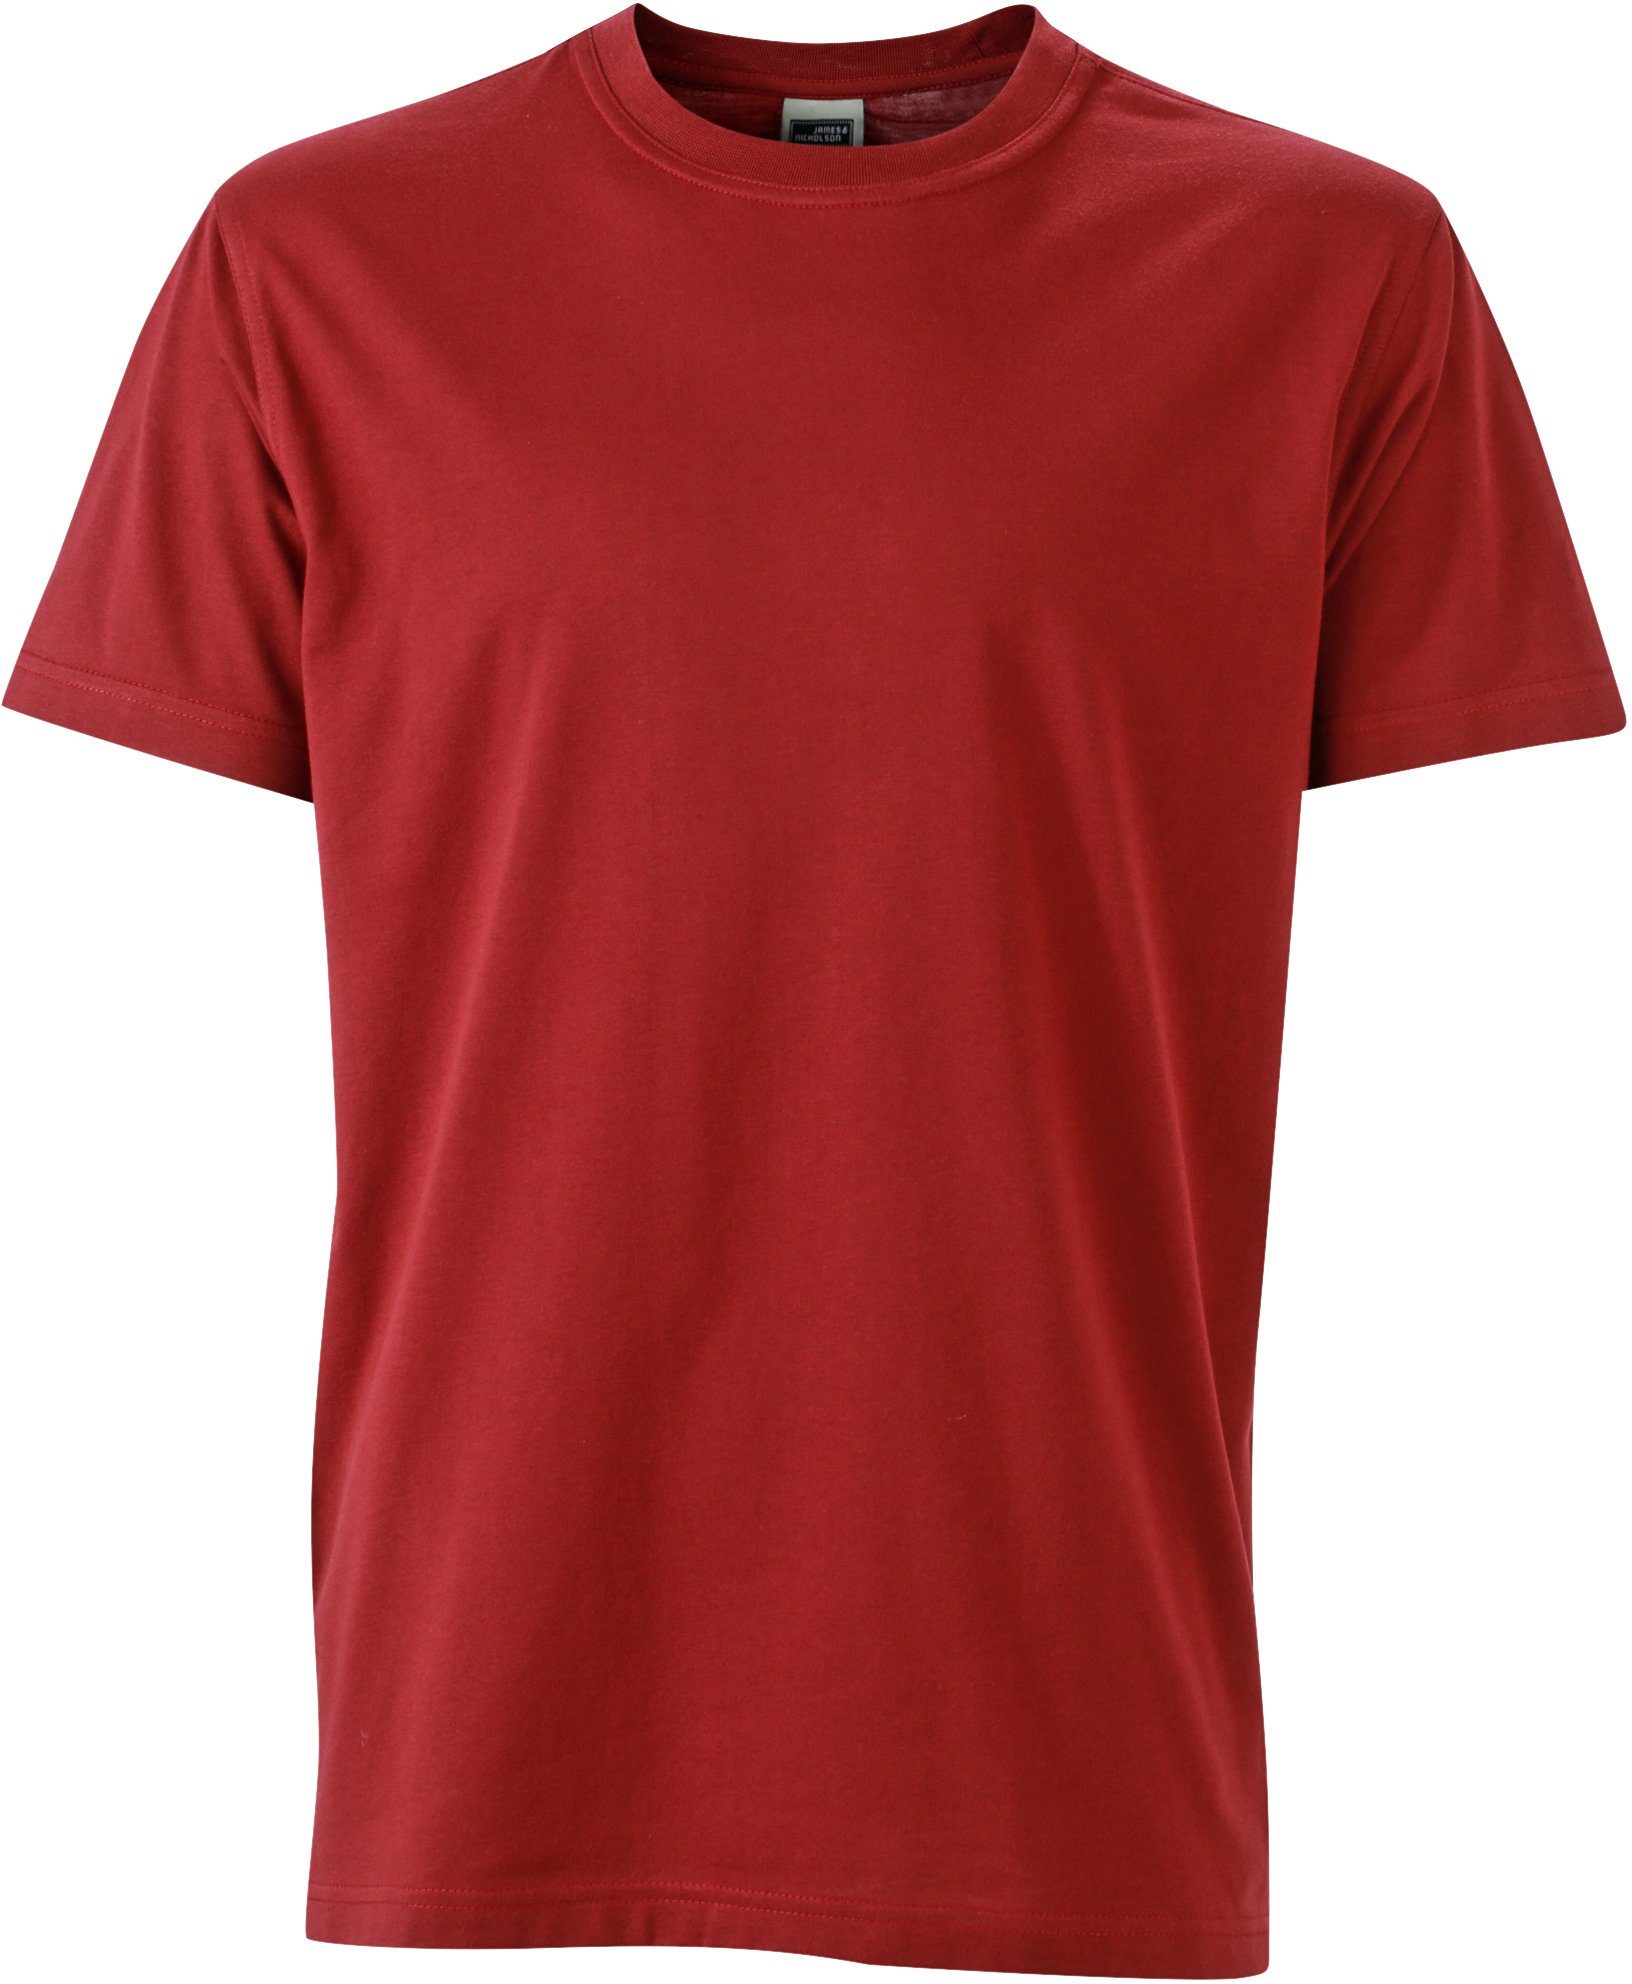 James & Nicholson T-Shirt Workwear auch großen Größen in T-Shirt WINE FaS50838